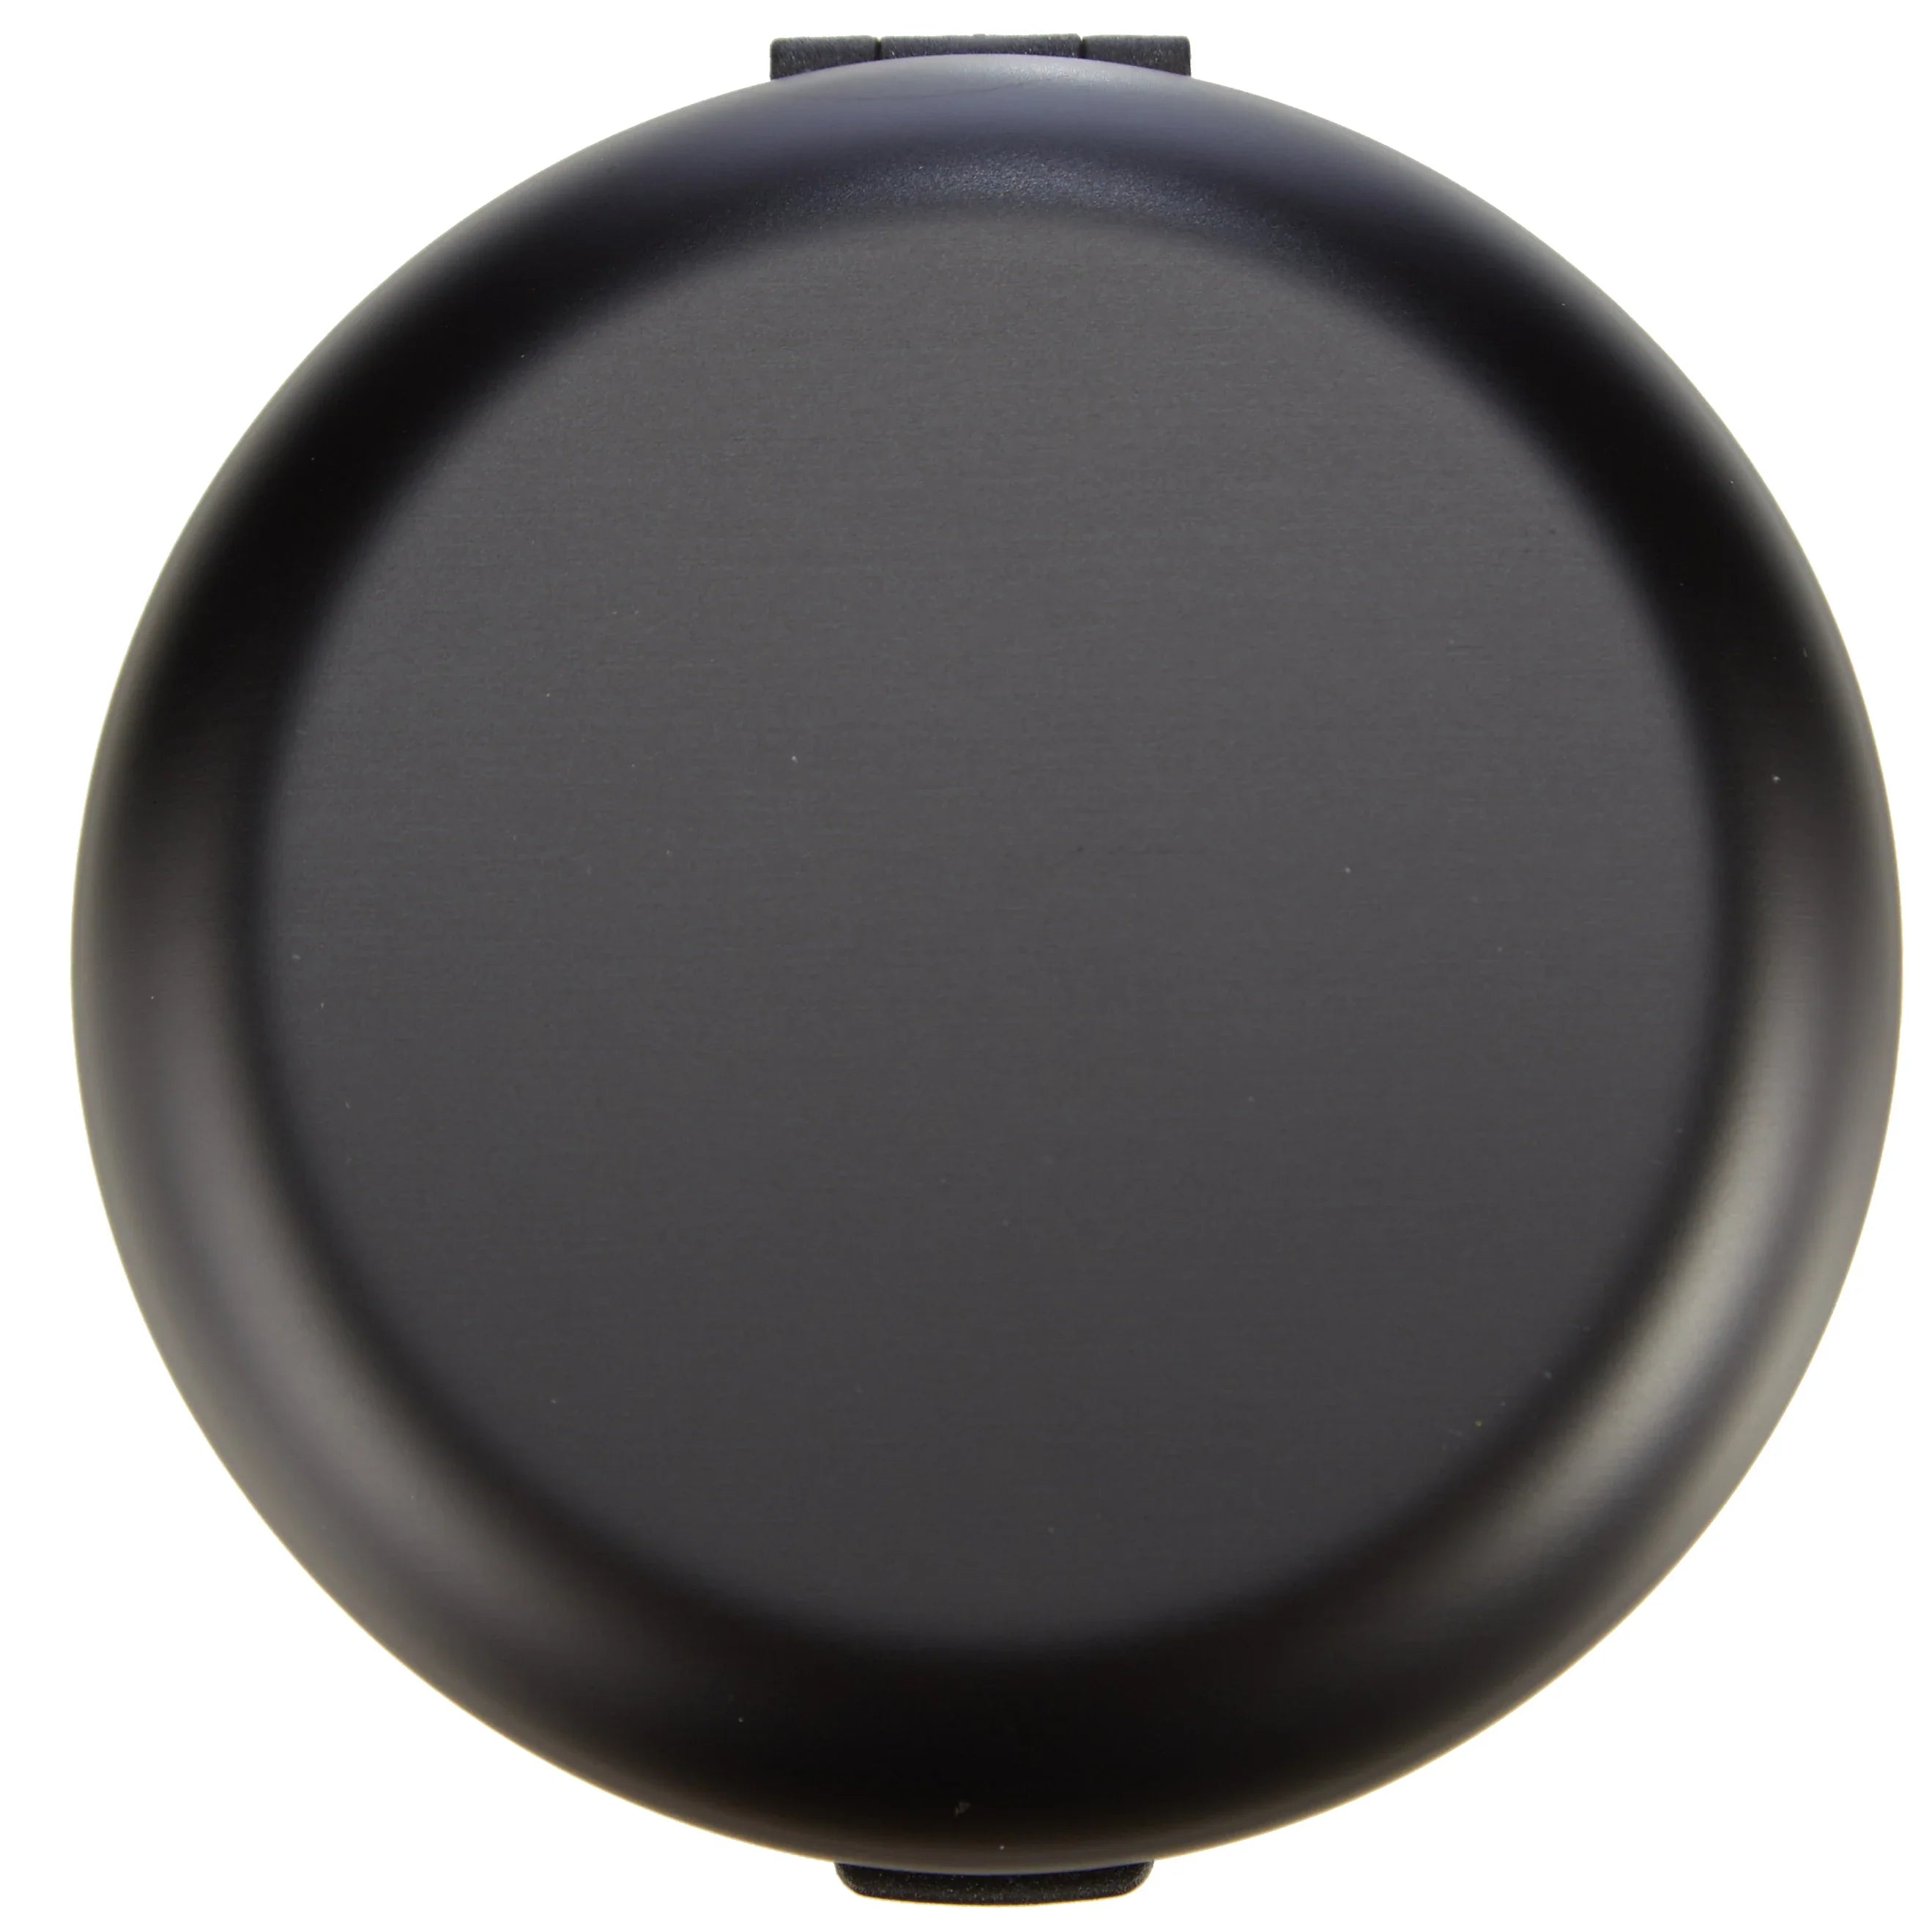 Ögon Designs Wallets Innovations Coin Dispenser 8 cm - black